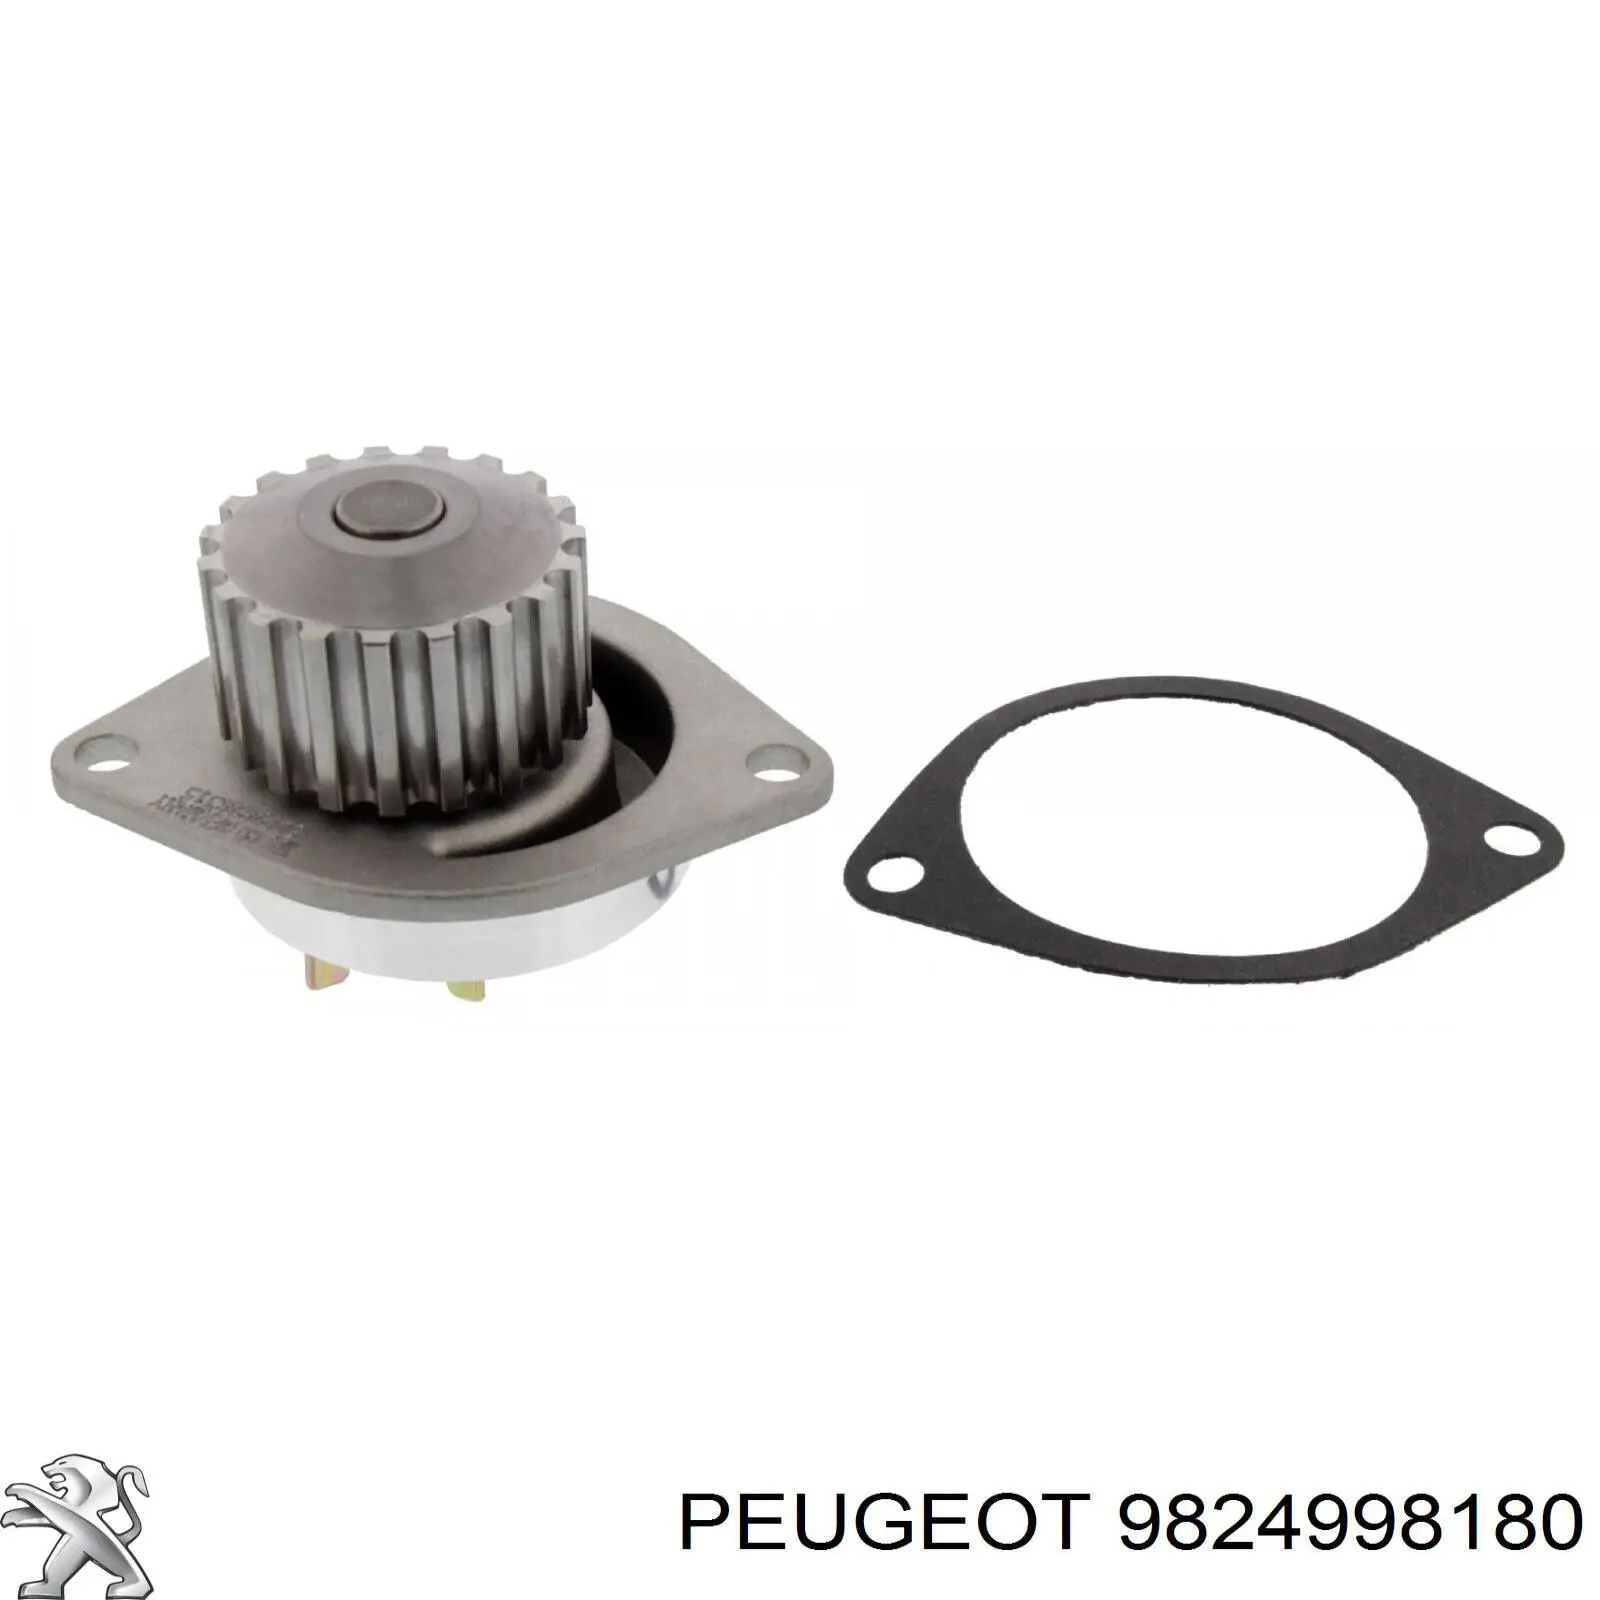 Помпа водяная (насос) охлаждения Peugeot/Citroen 9824998180